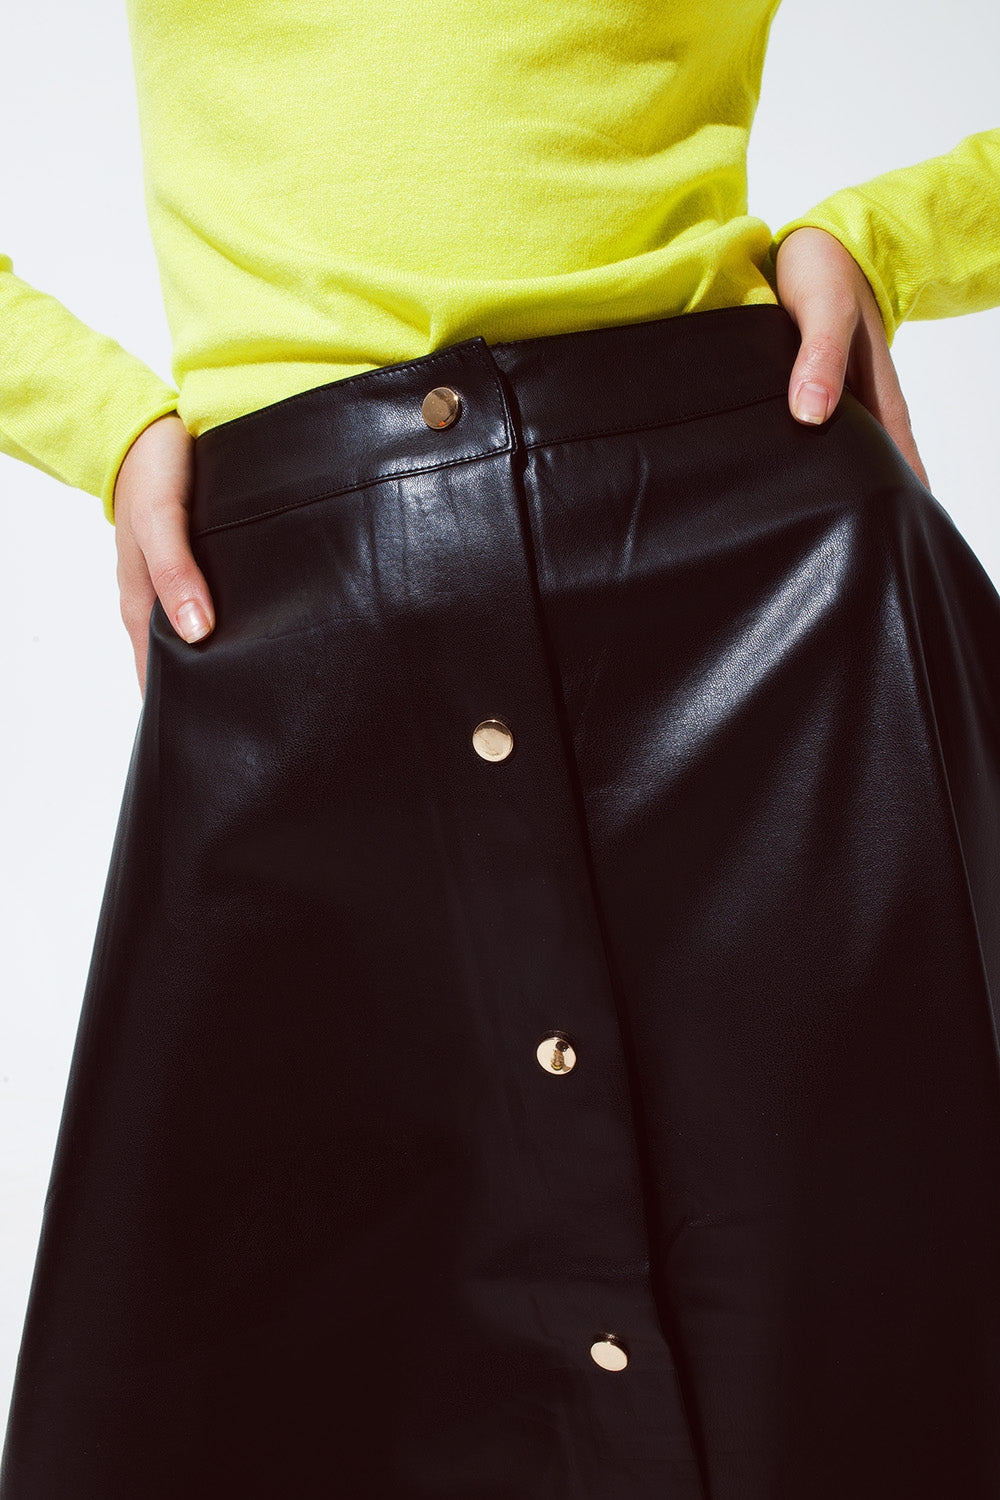 TEEK - Black Leatherette Buttoned Skirt SKIRT TEEK M   